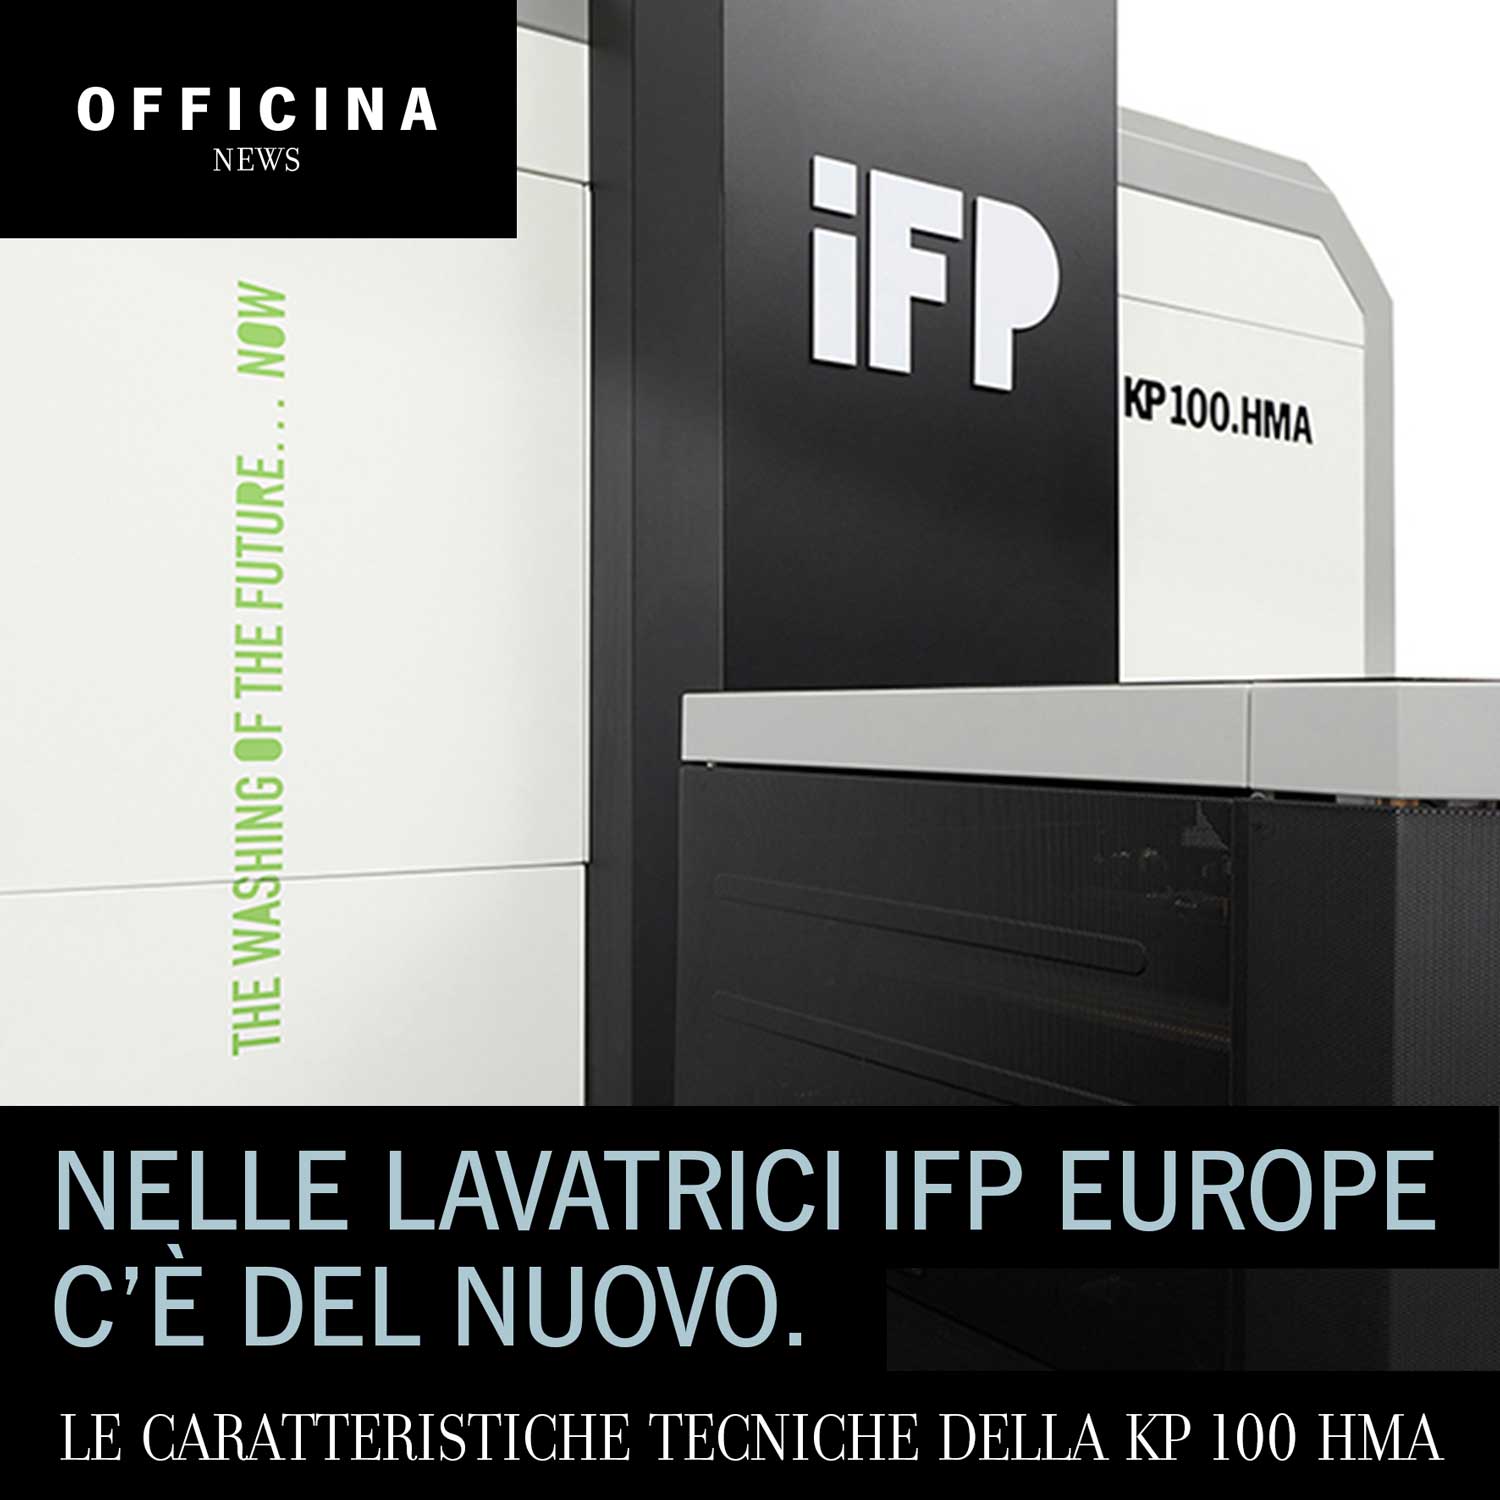 Nelle lavatrici IFP Europe c’è del nuovo.